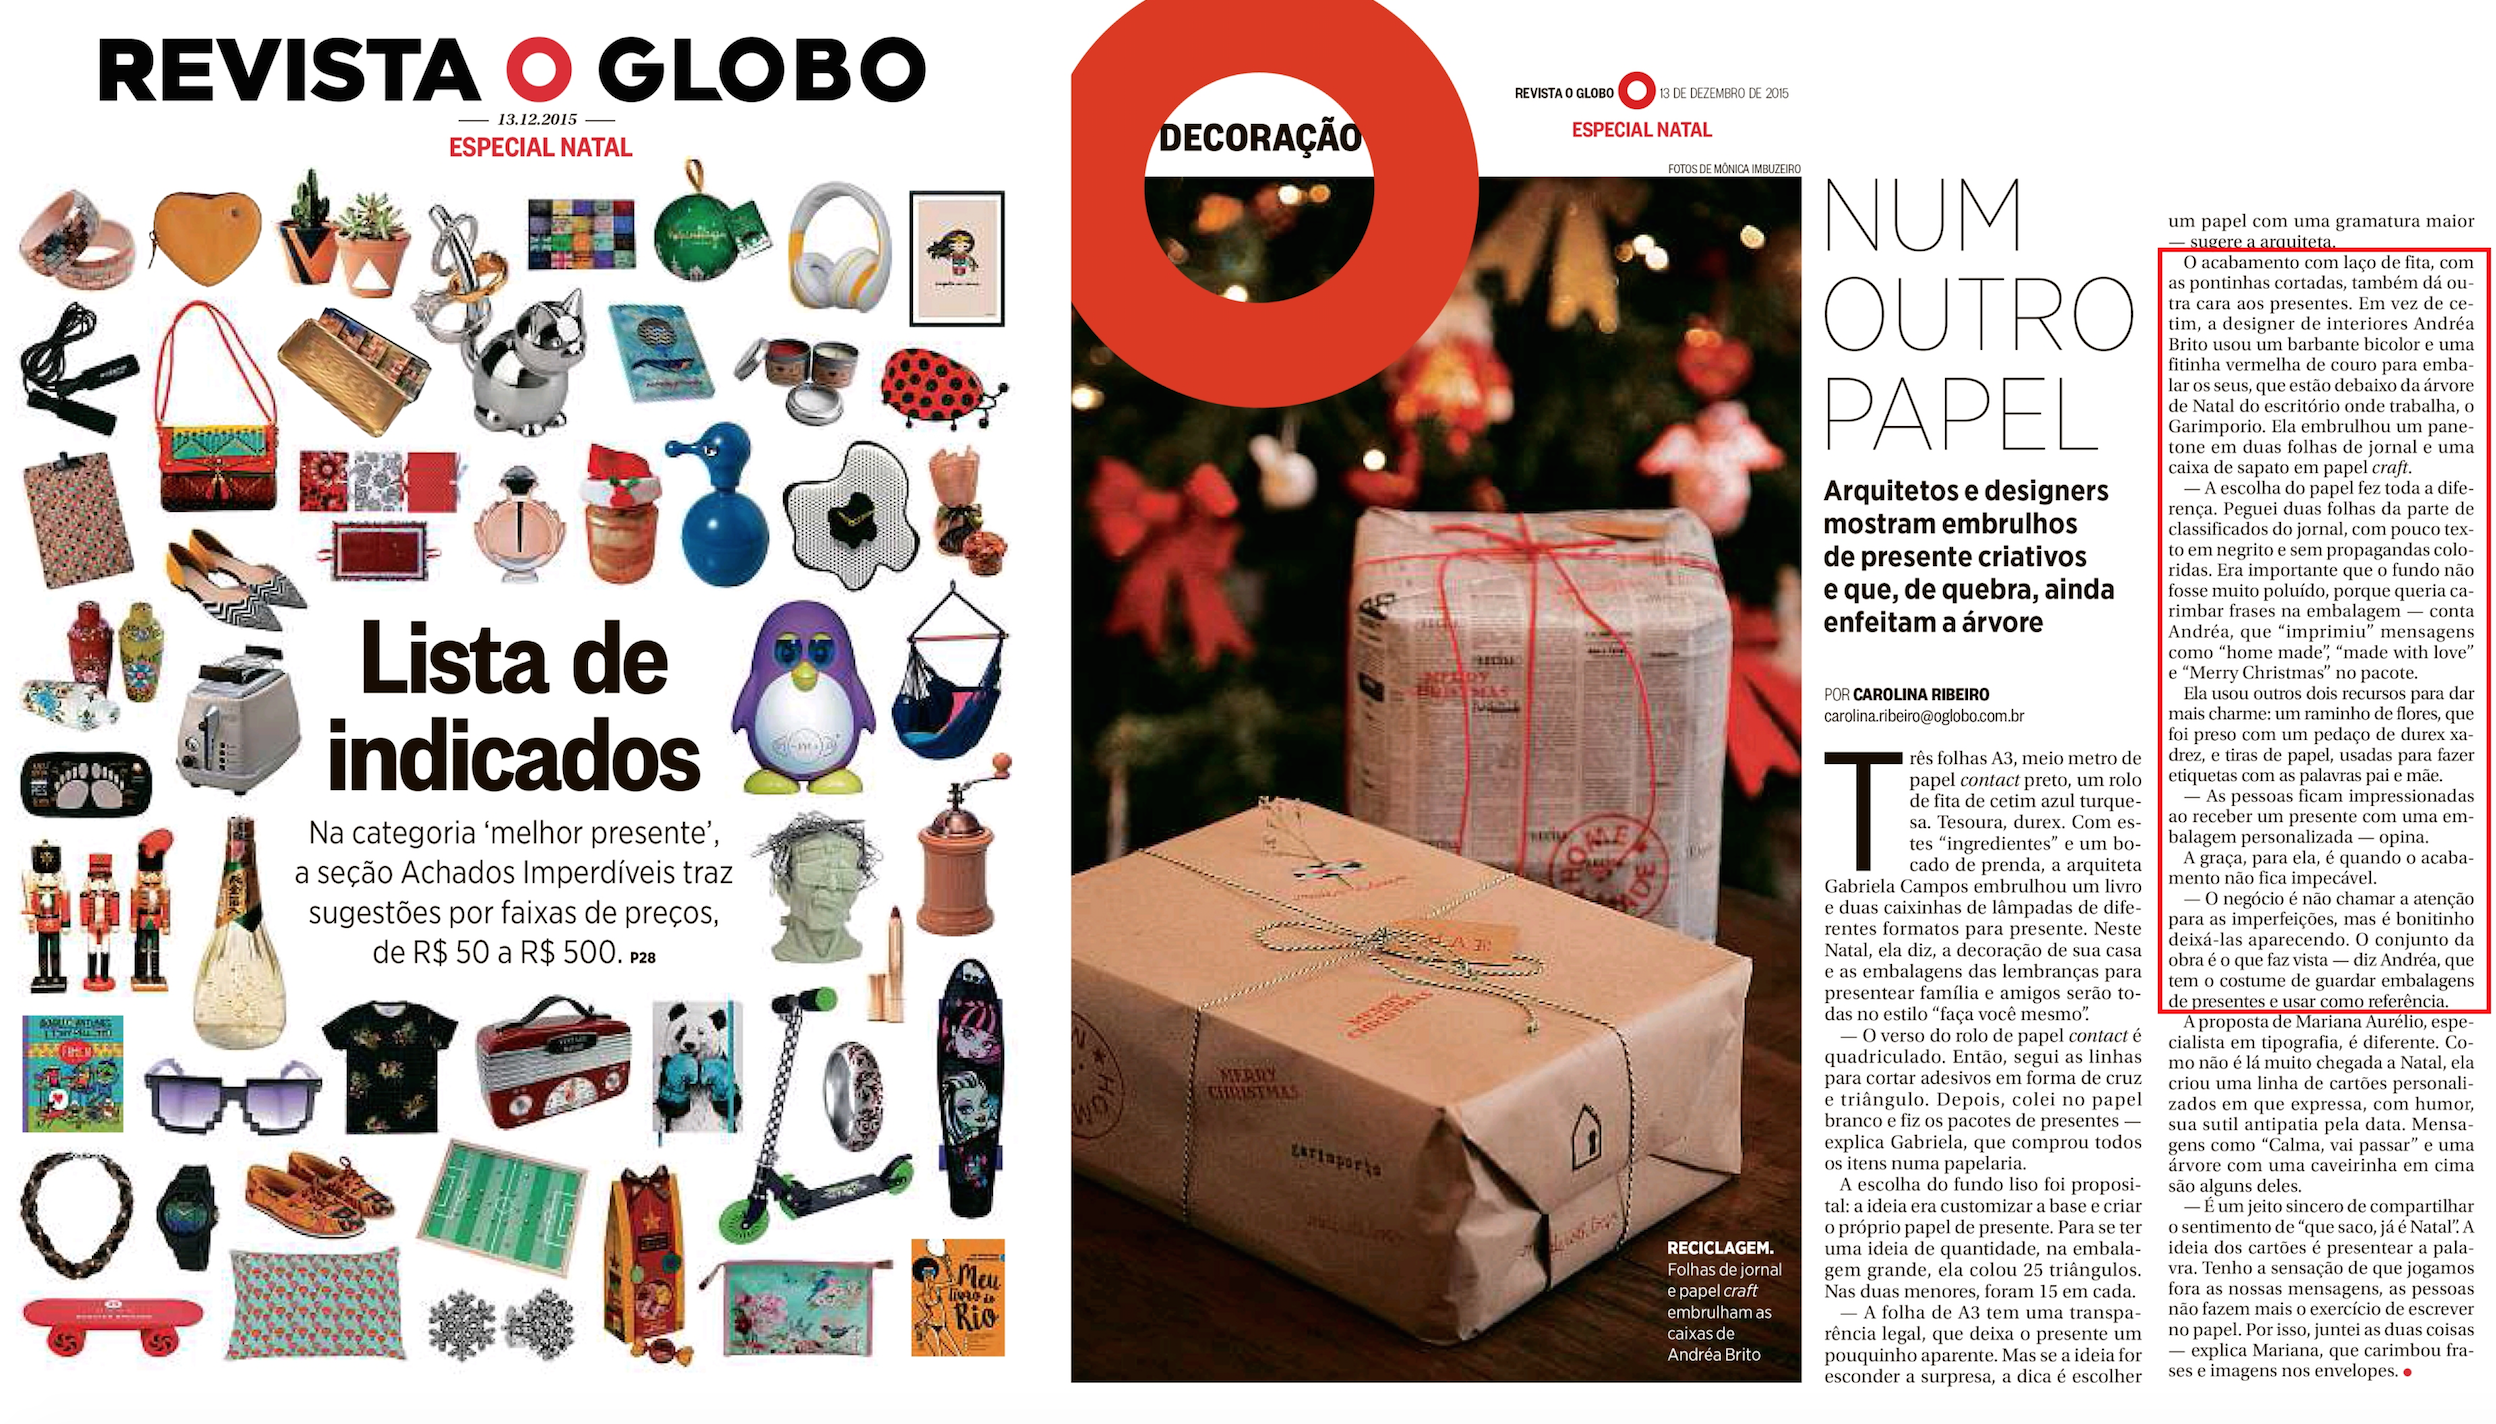 151213_Revista O Globo_ESPECIAL NATAL.png